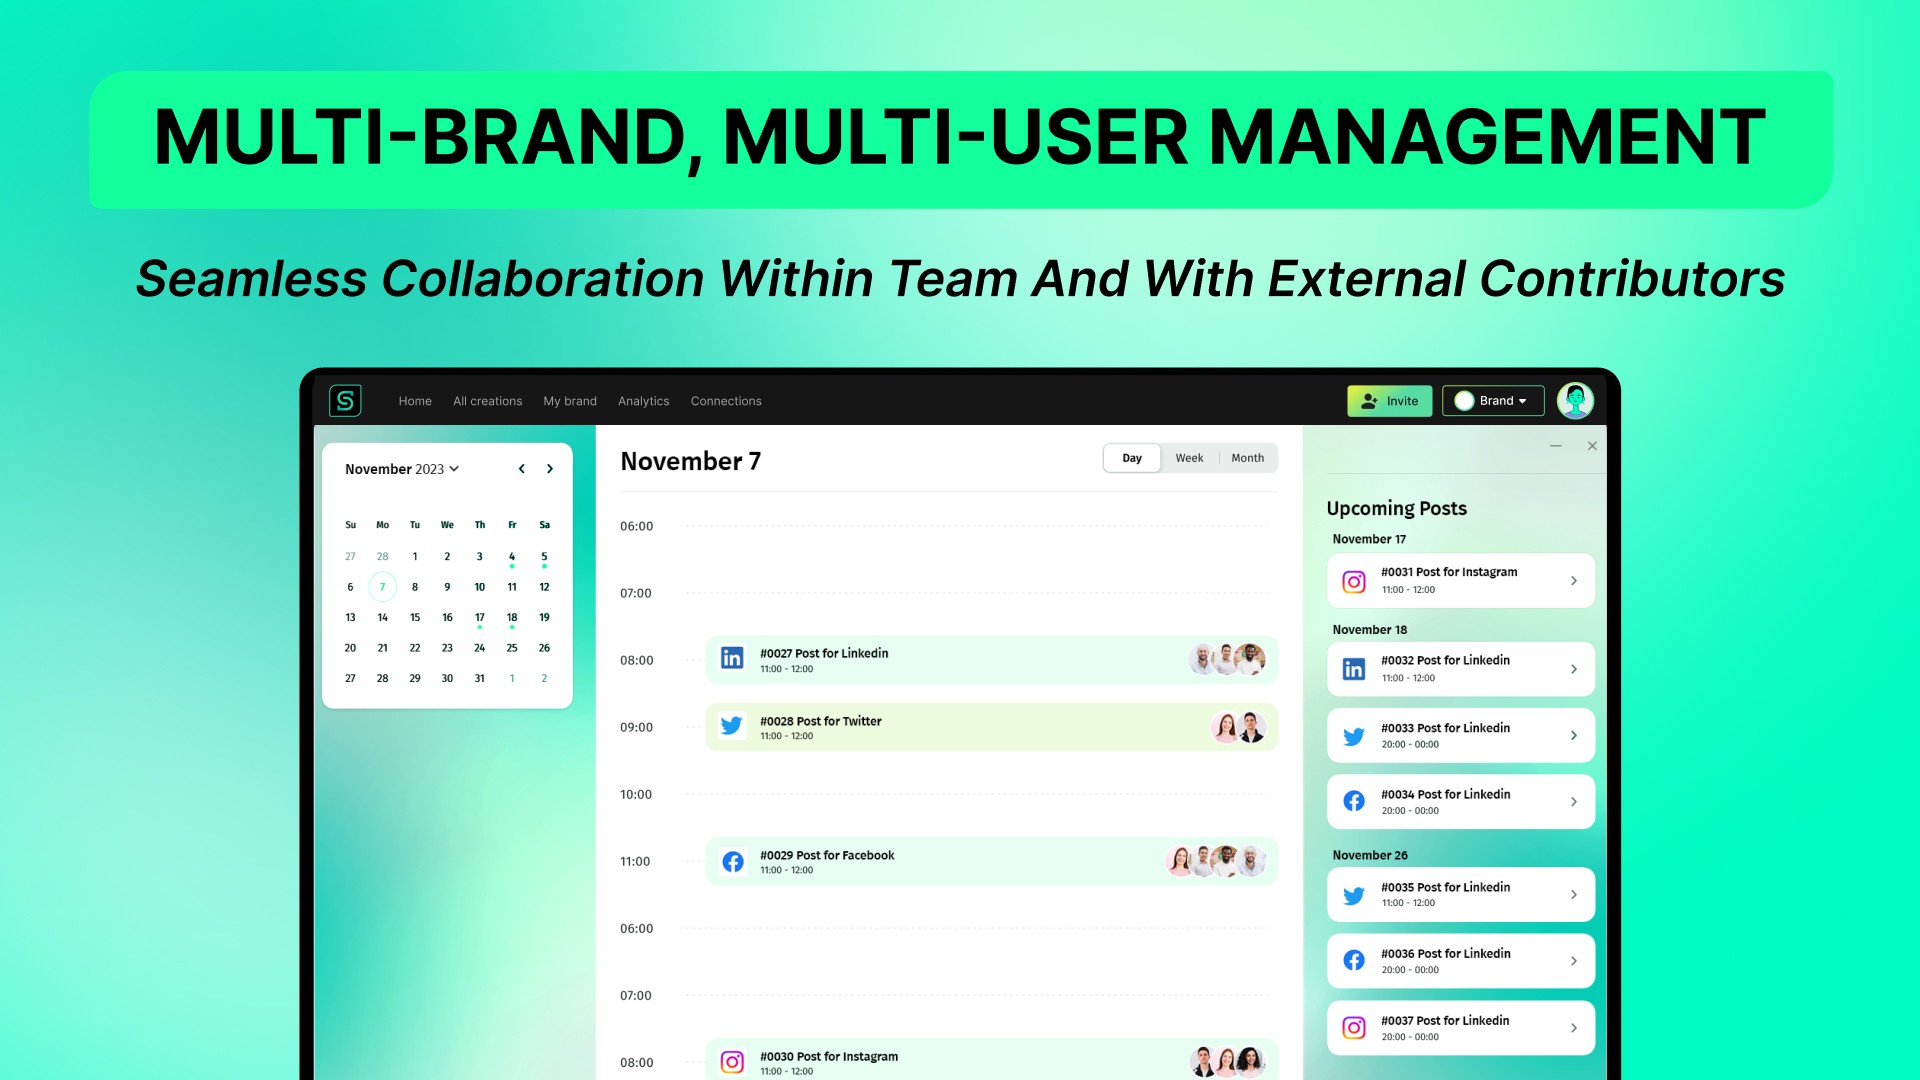 Multi-user management